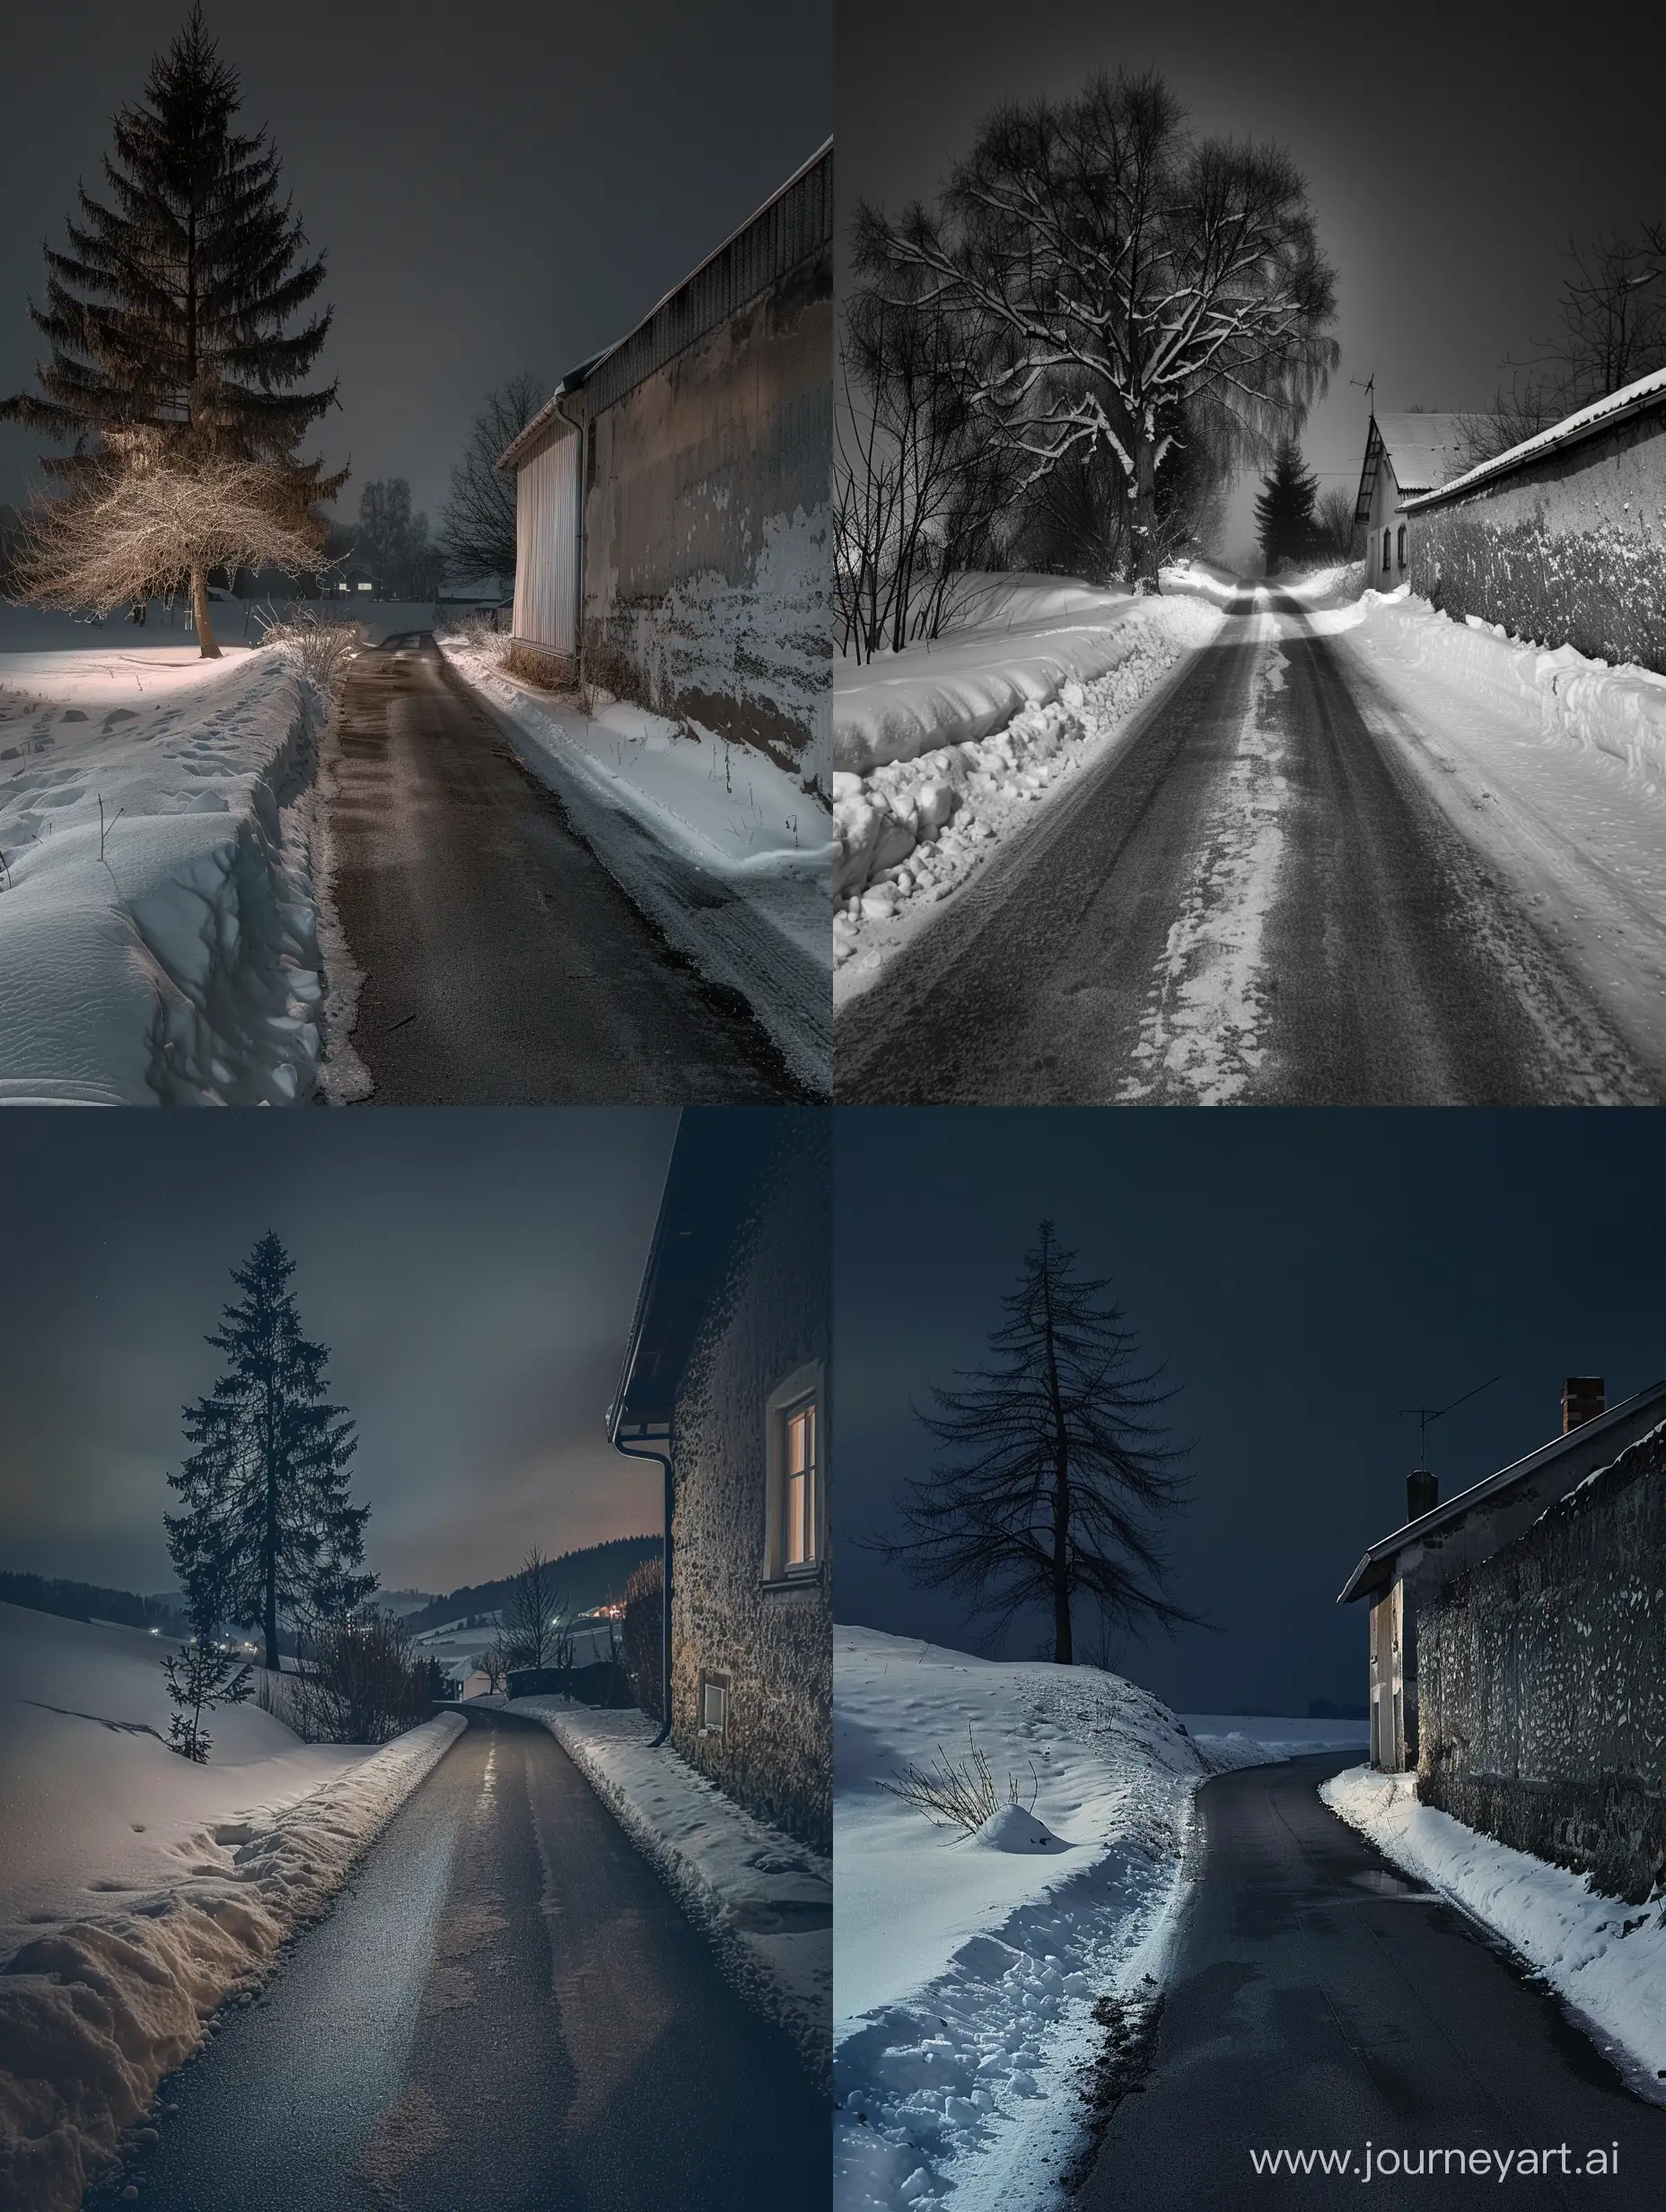 Асфальтовая узкая дорожка, зима, ночь, справа стена дома, слева небольшое заснеженное пространство, слева стоит одинокое дерево, пейзаж угнетающий